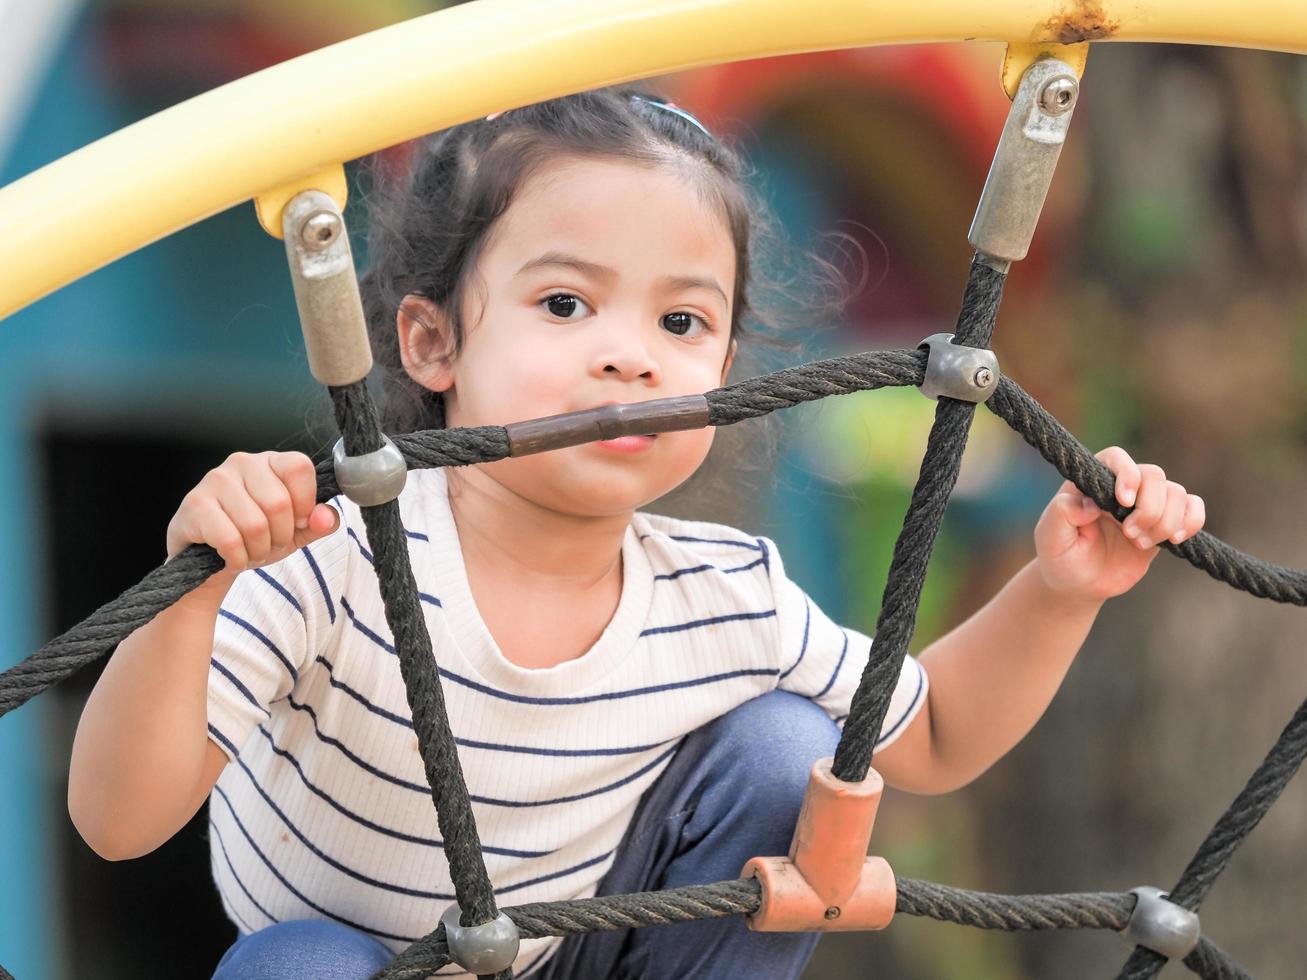 jovens garotas asiáticas estão se divertindo escalando em redes de corda em um playground foto